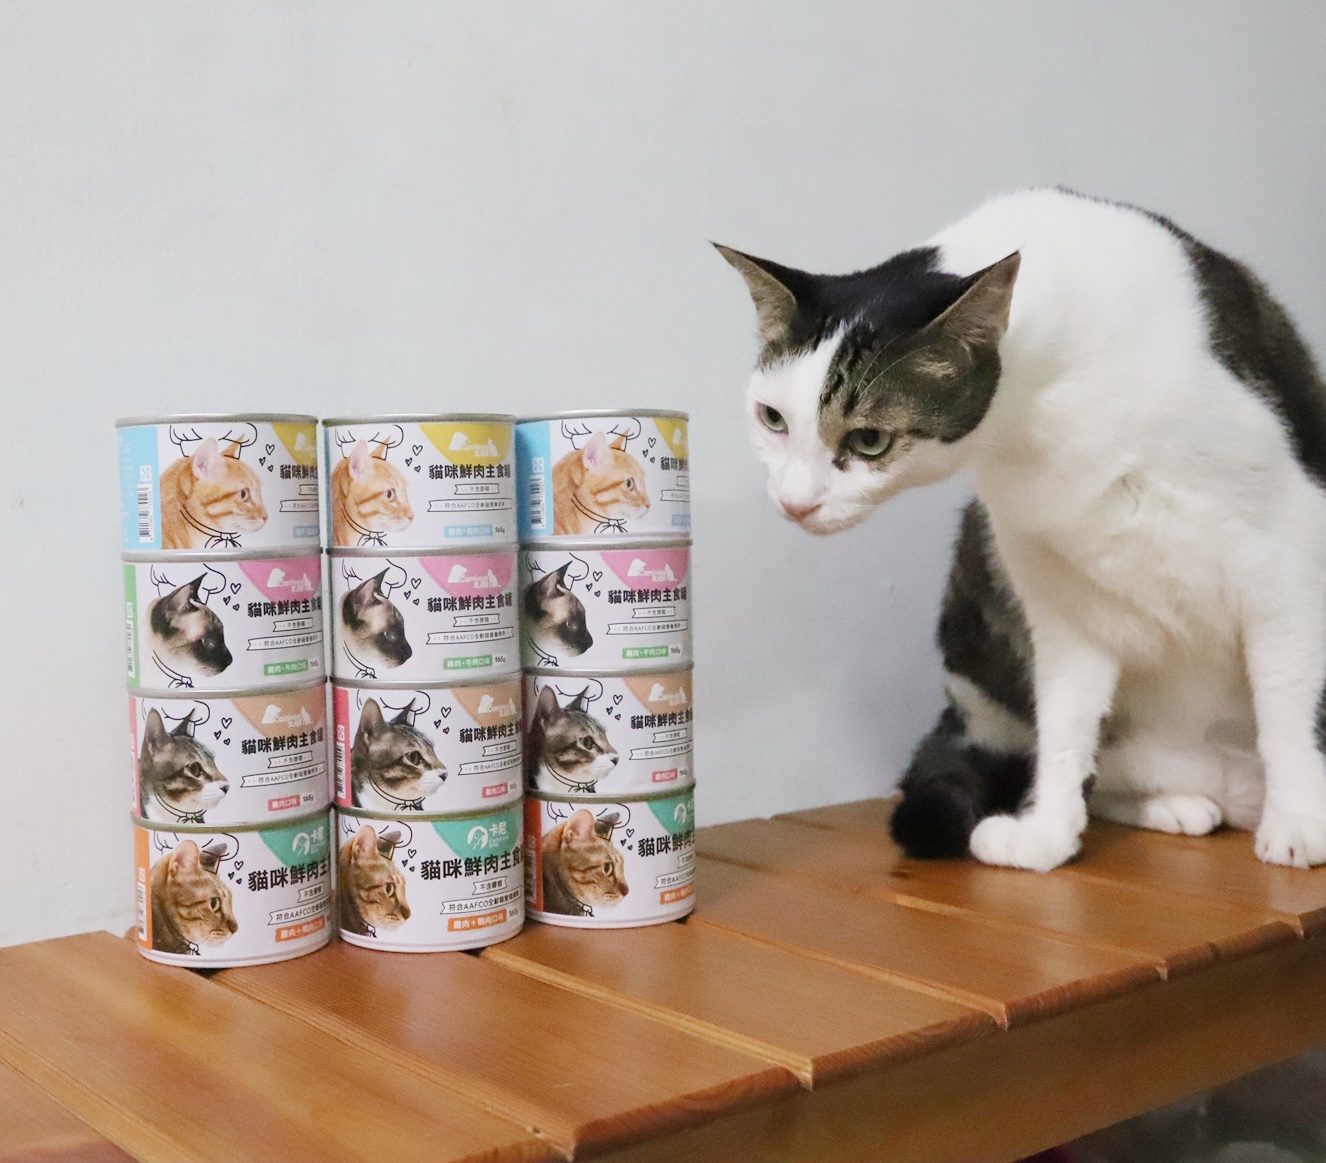 卡尼Carnivore貓咪鮮肉主食罐給我家貓咪嚴格篩選人用等級原塊肉台灣製造